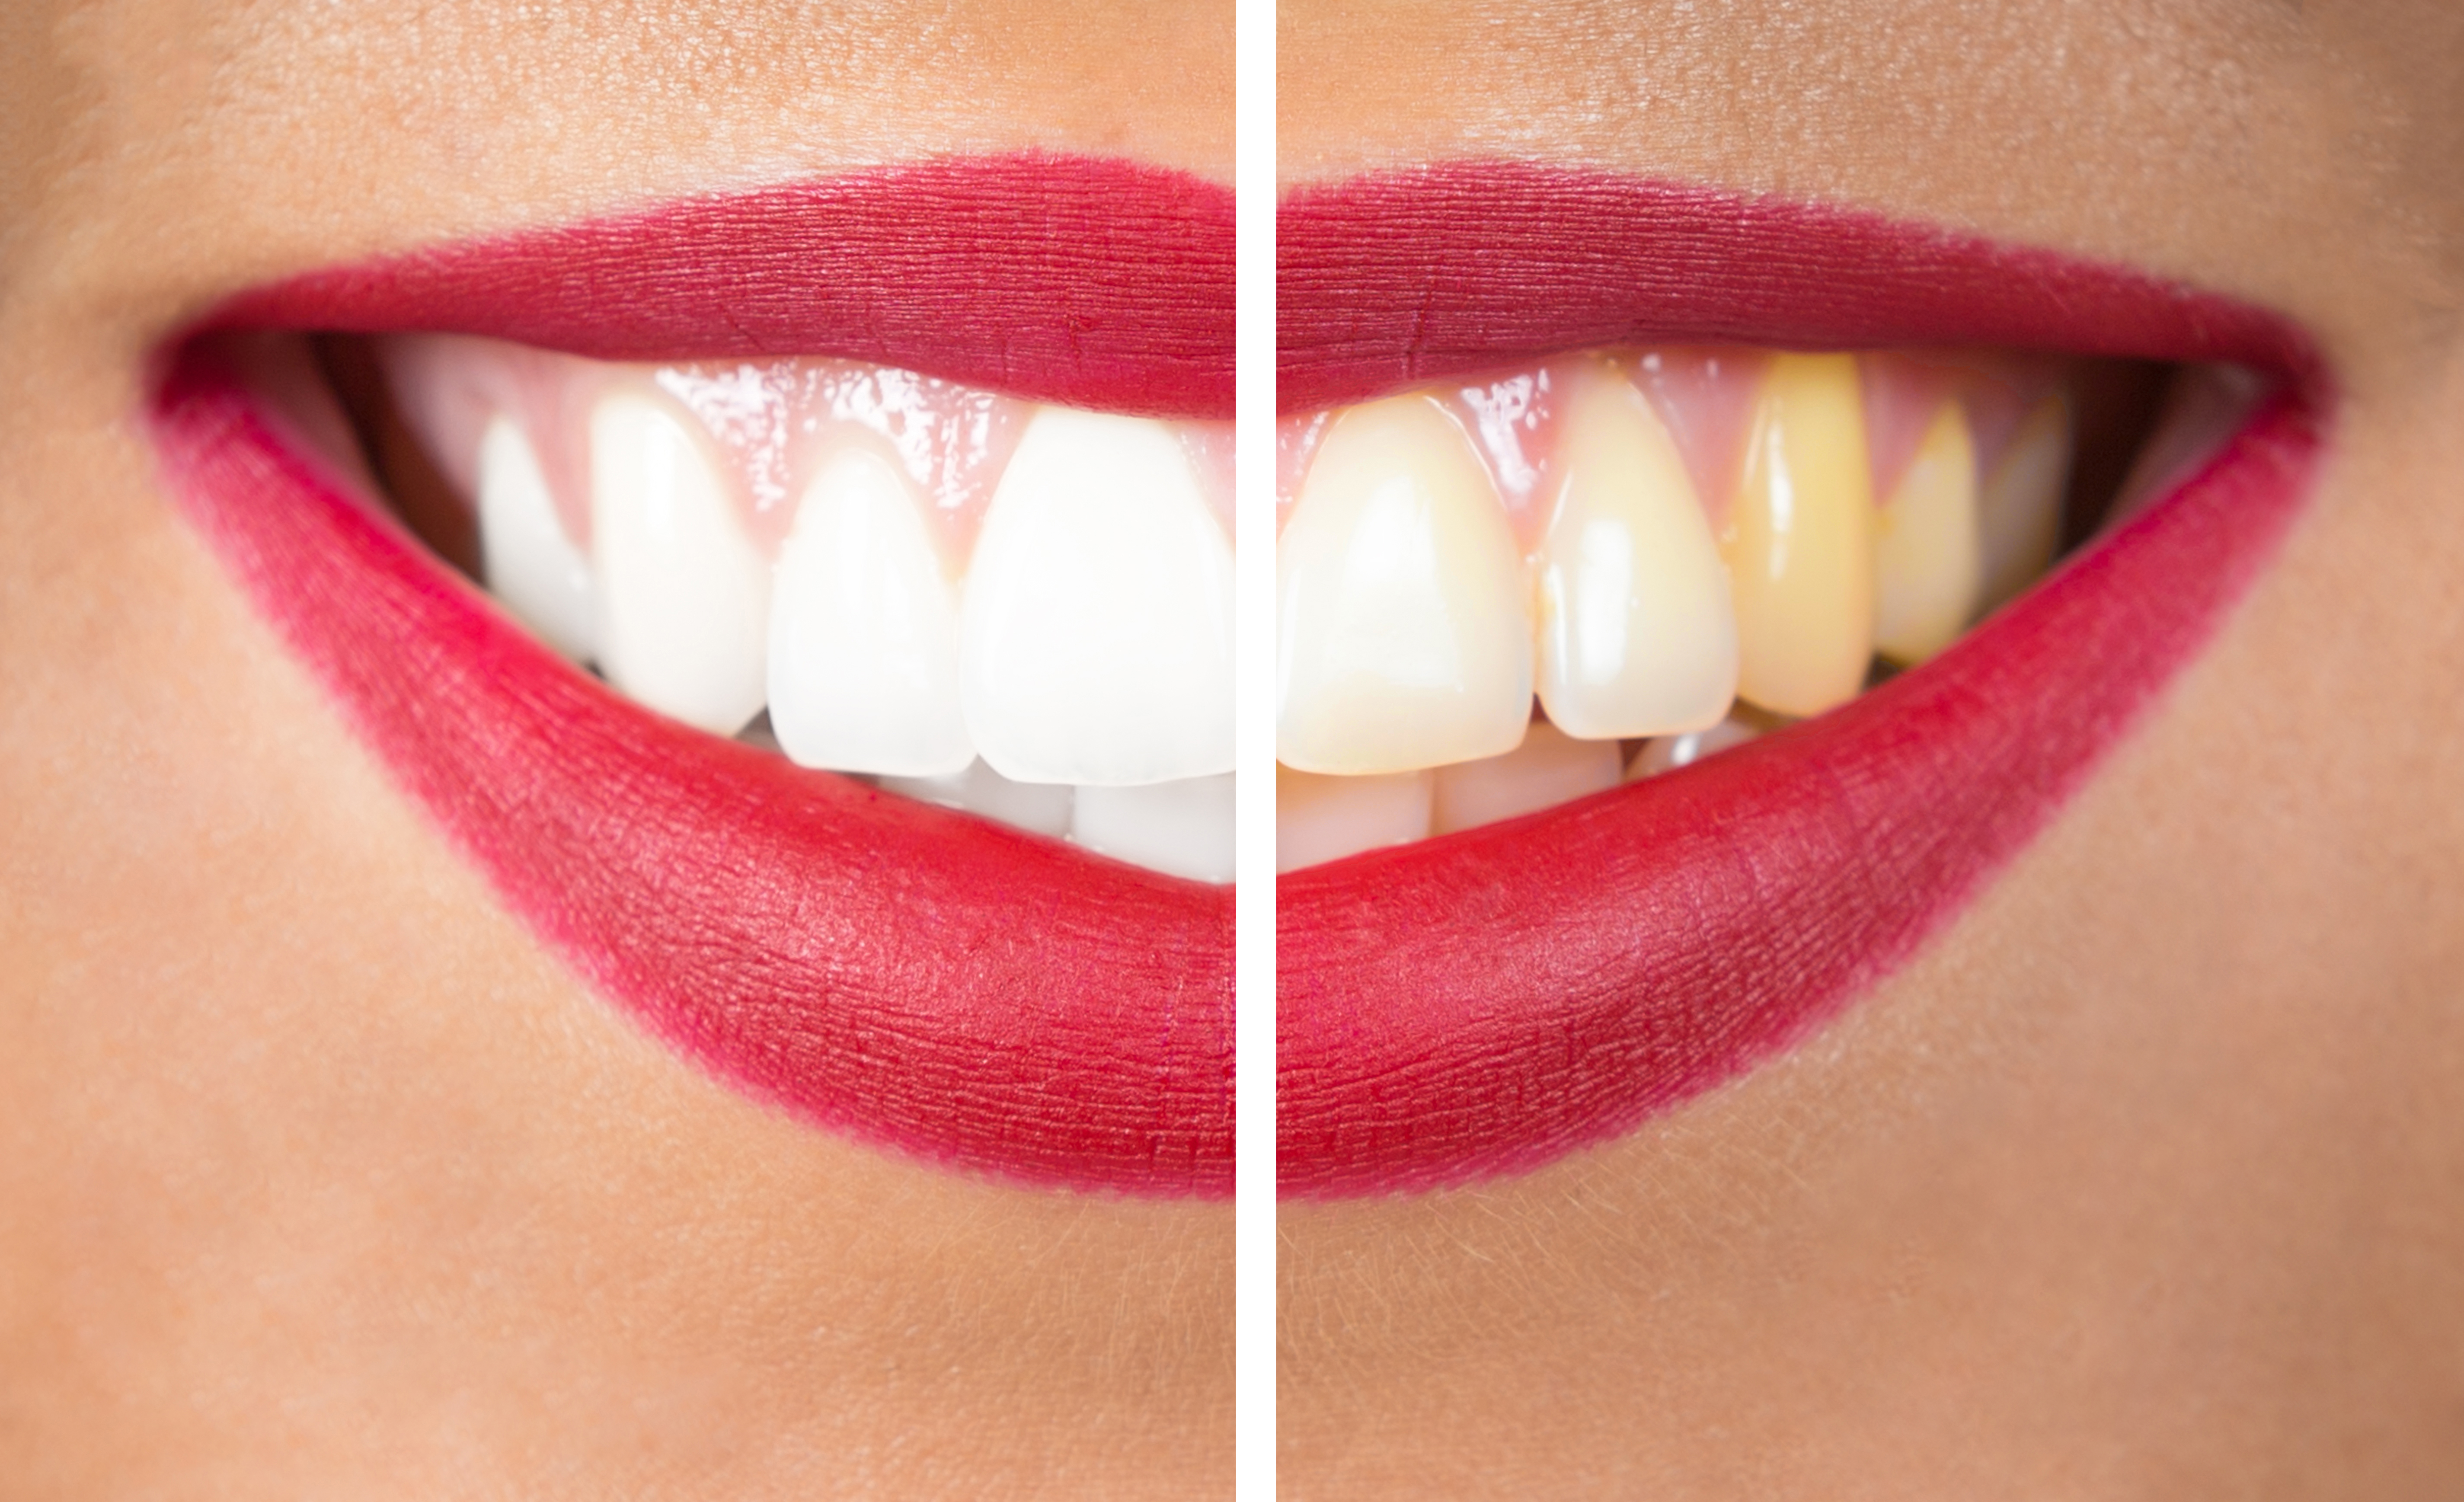 teeth-whitening-article-1-1496921210.jpg